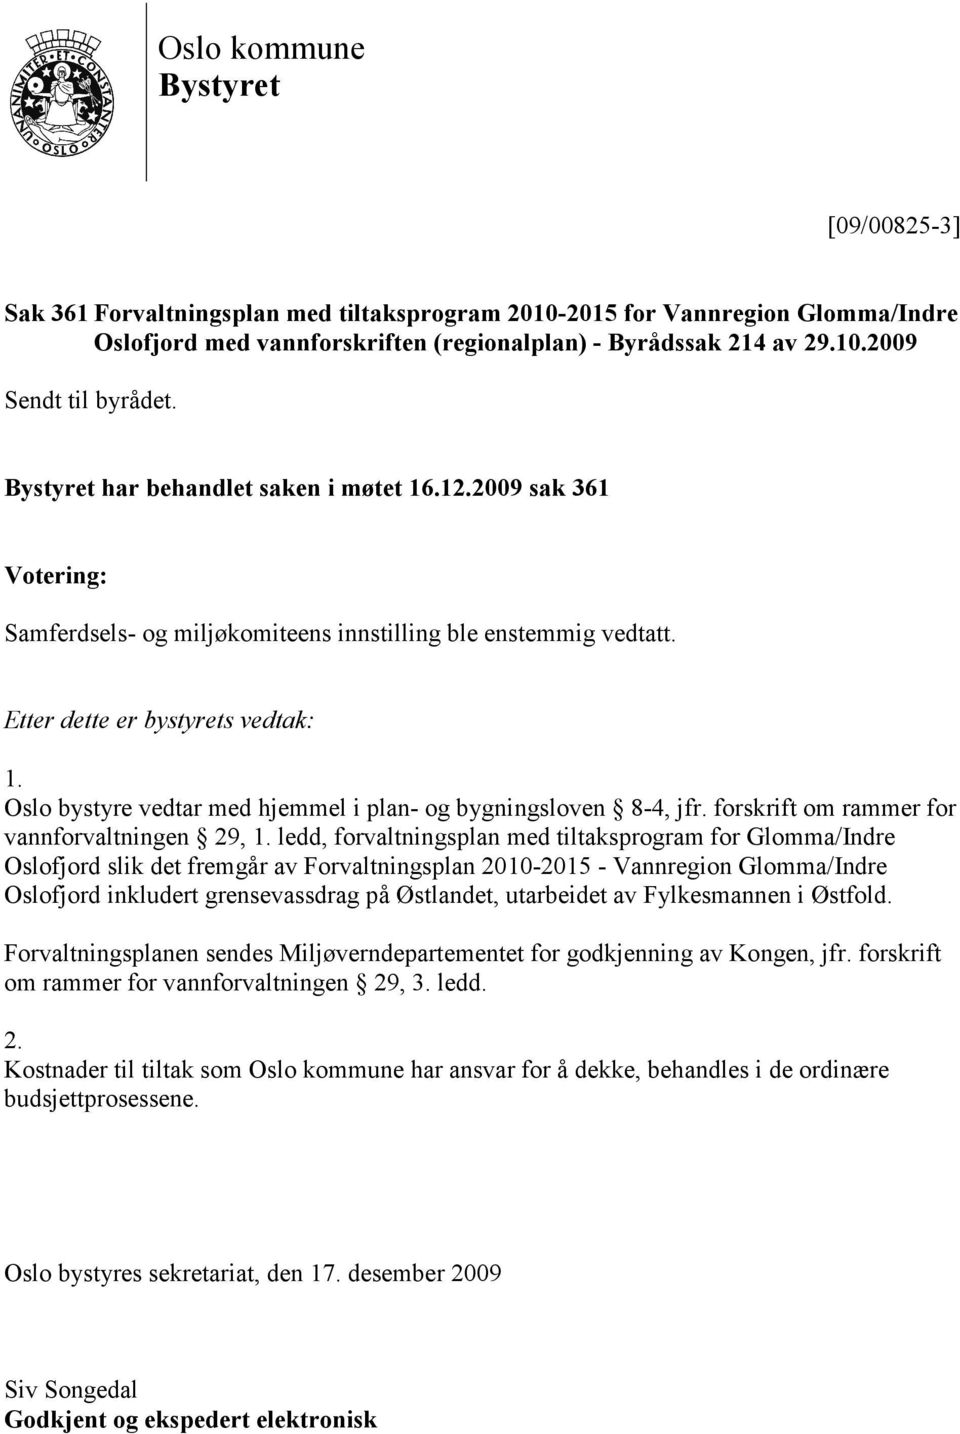 Oslo bystyre vedtar med hjemmel i plan- og bygningsloven 8-4, jfr. forskrift om rammer for vannforvaltningen 29, 1.